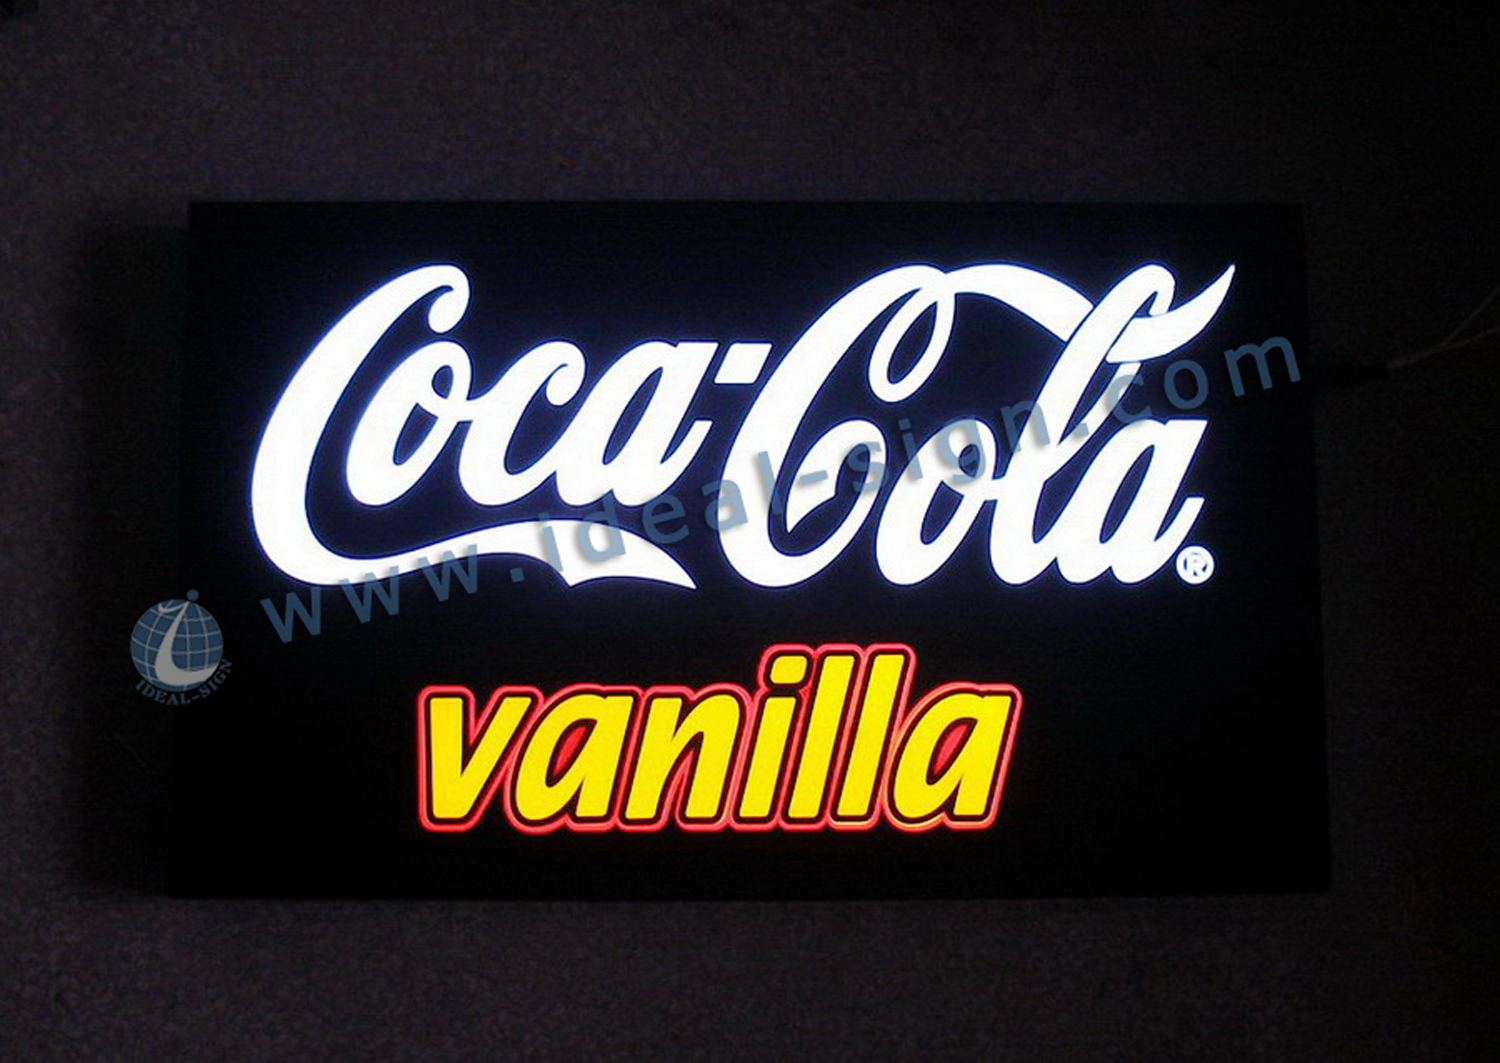 Coca Cola scatola illuminata a led